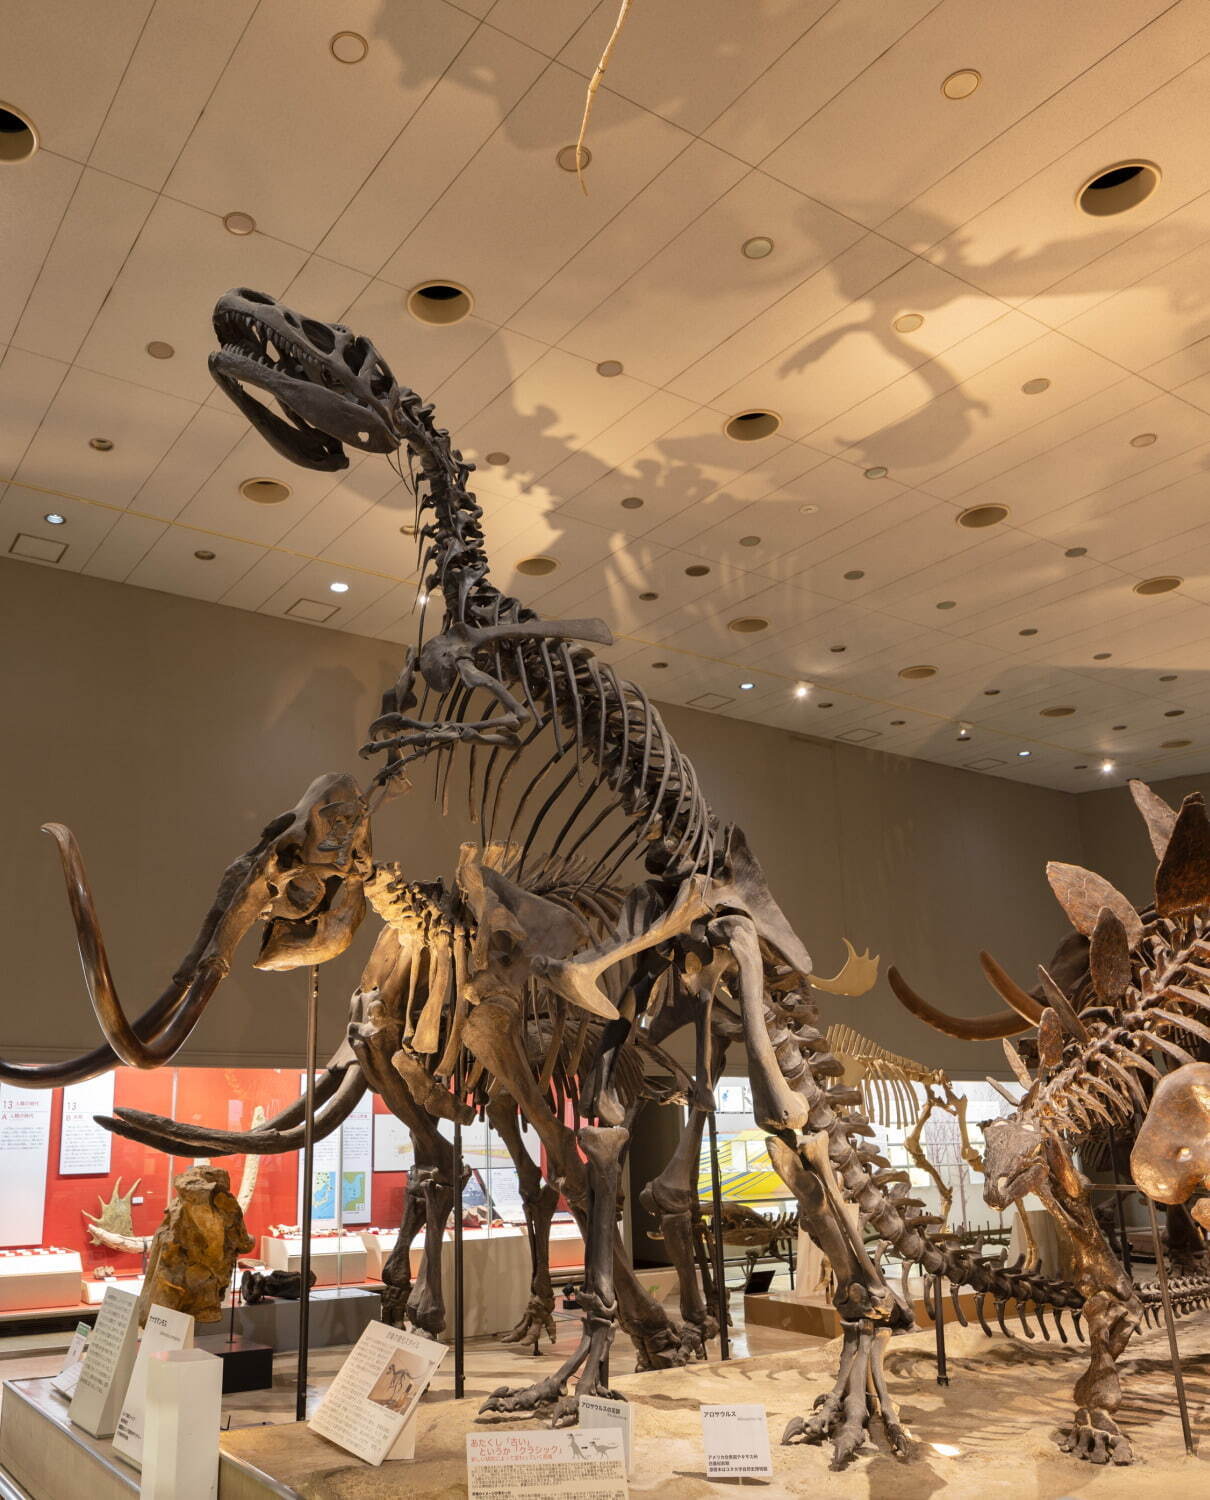 大阪市立自然史博物館
アロサウルス